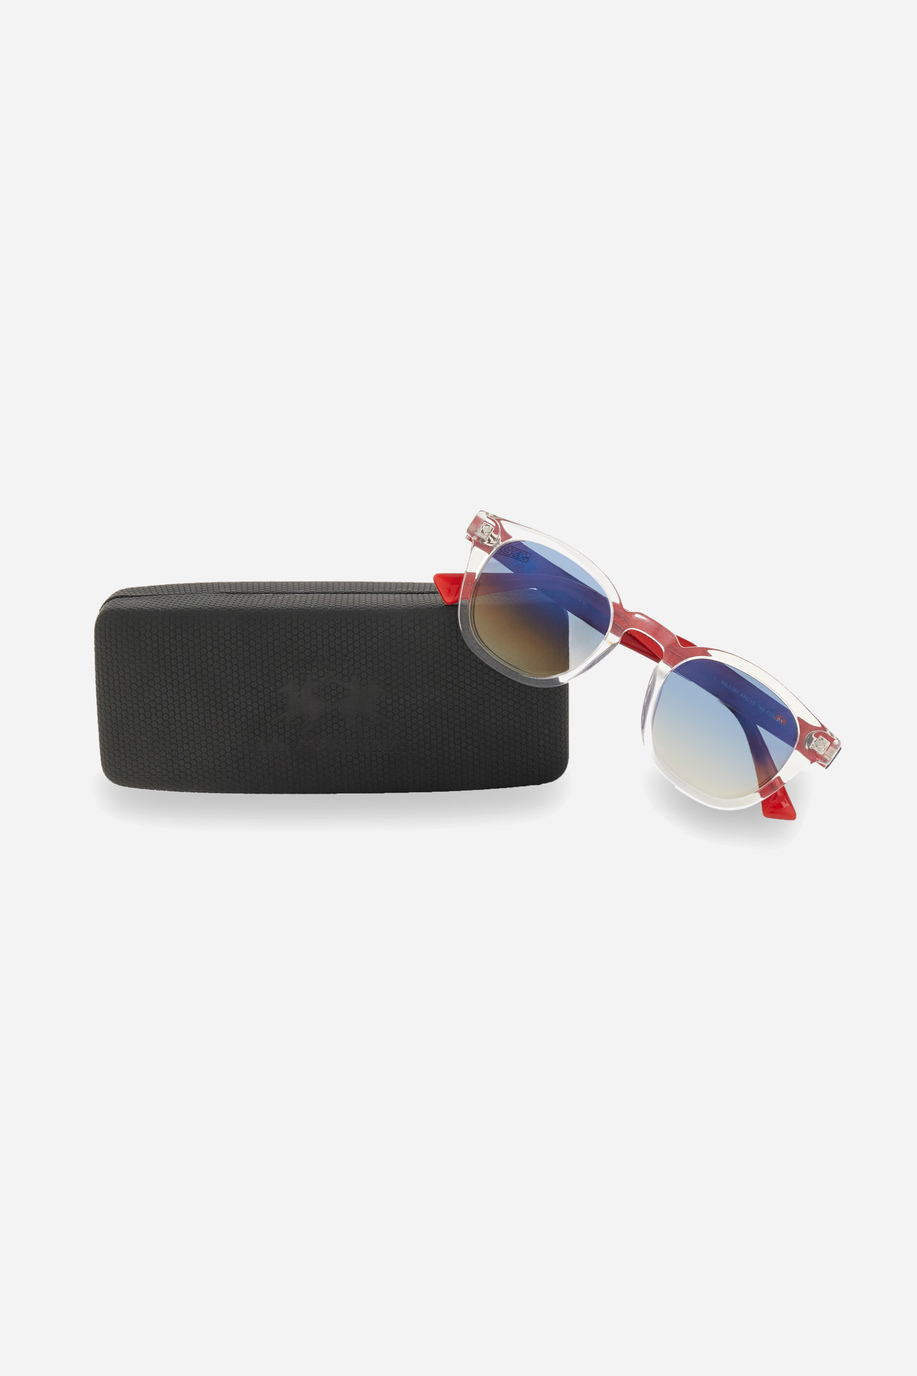 Sonnenbrille Modell pantos - Brille | La Martina - Official Online Shop